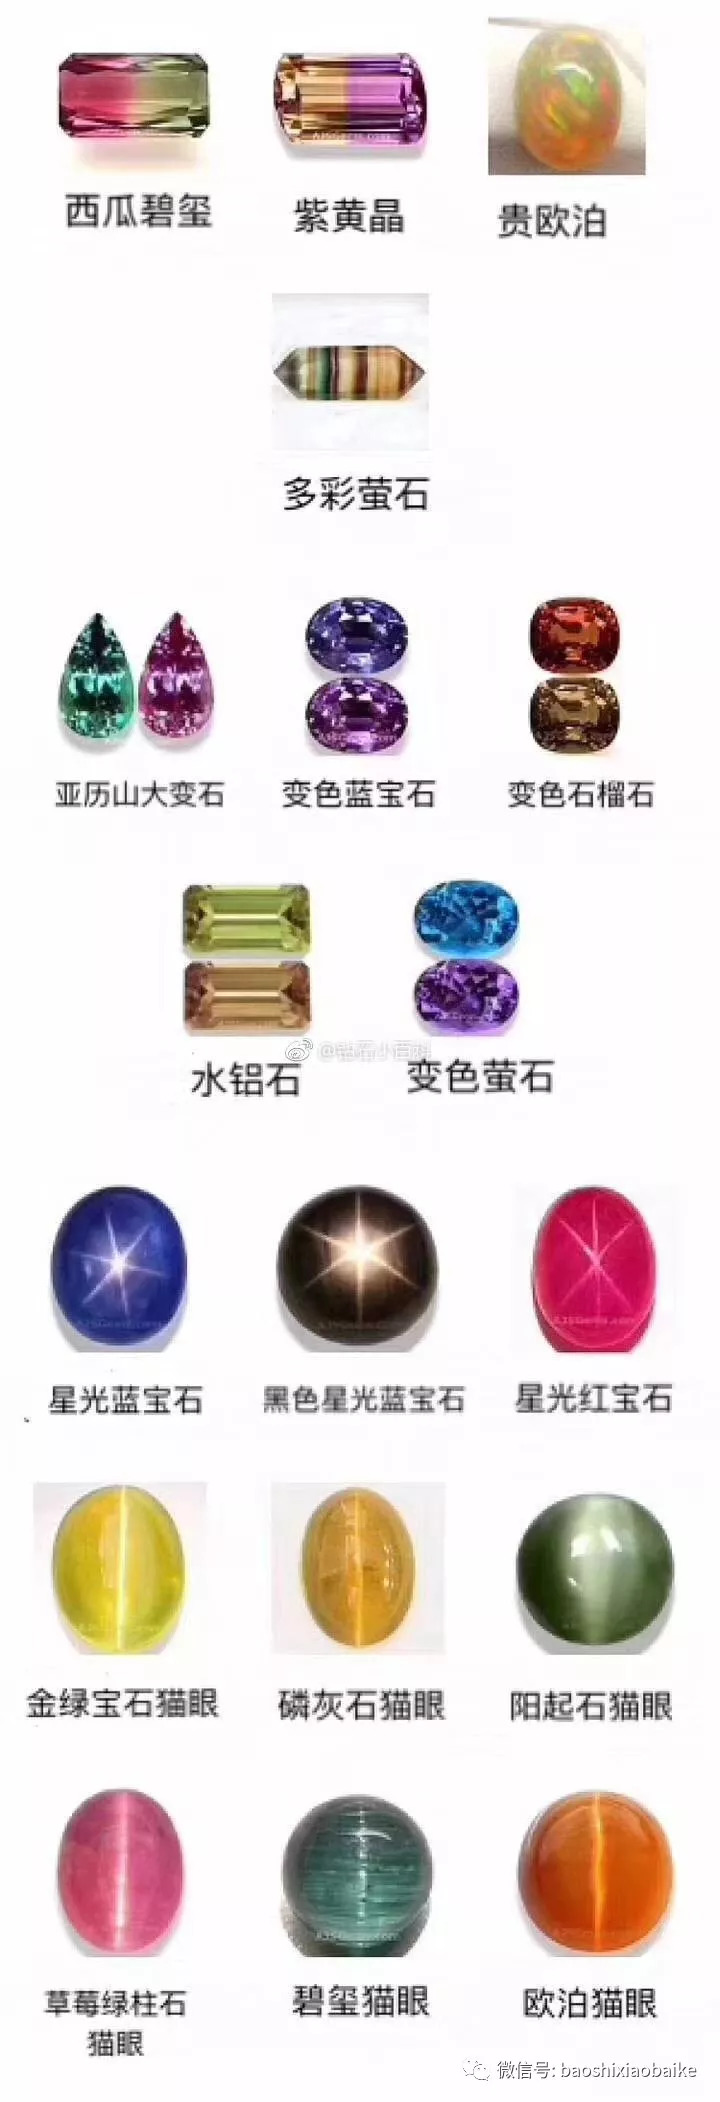 宝石颜色分类(图文实例版)